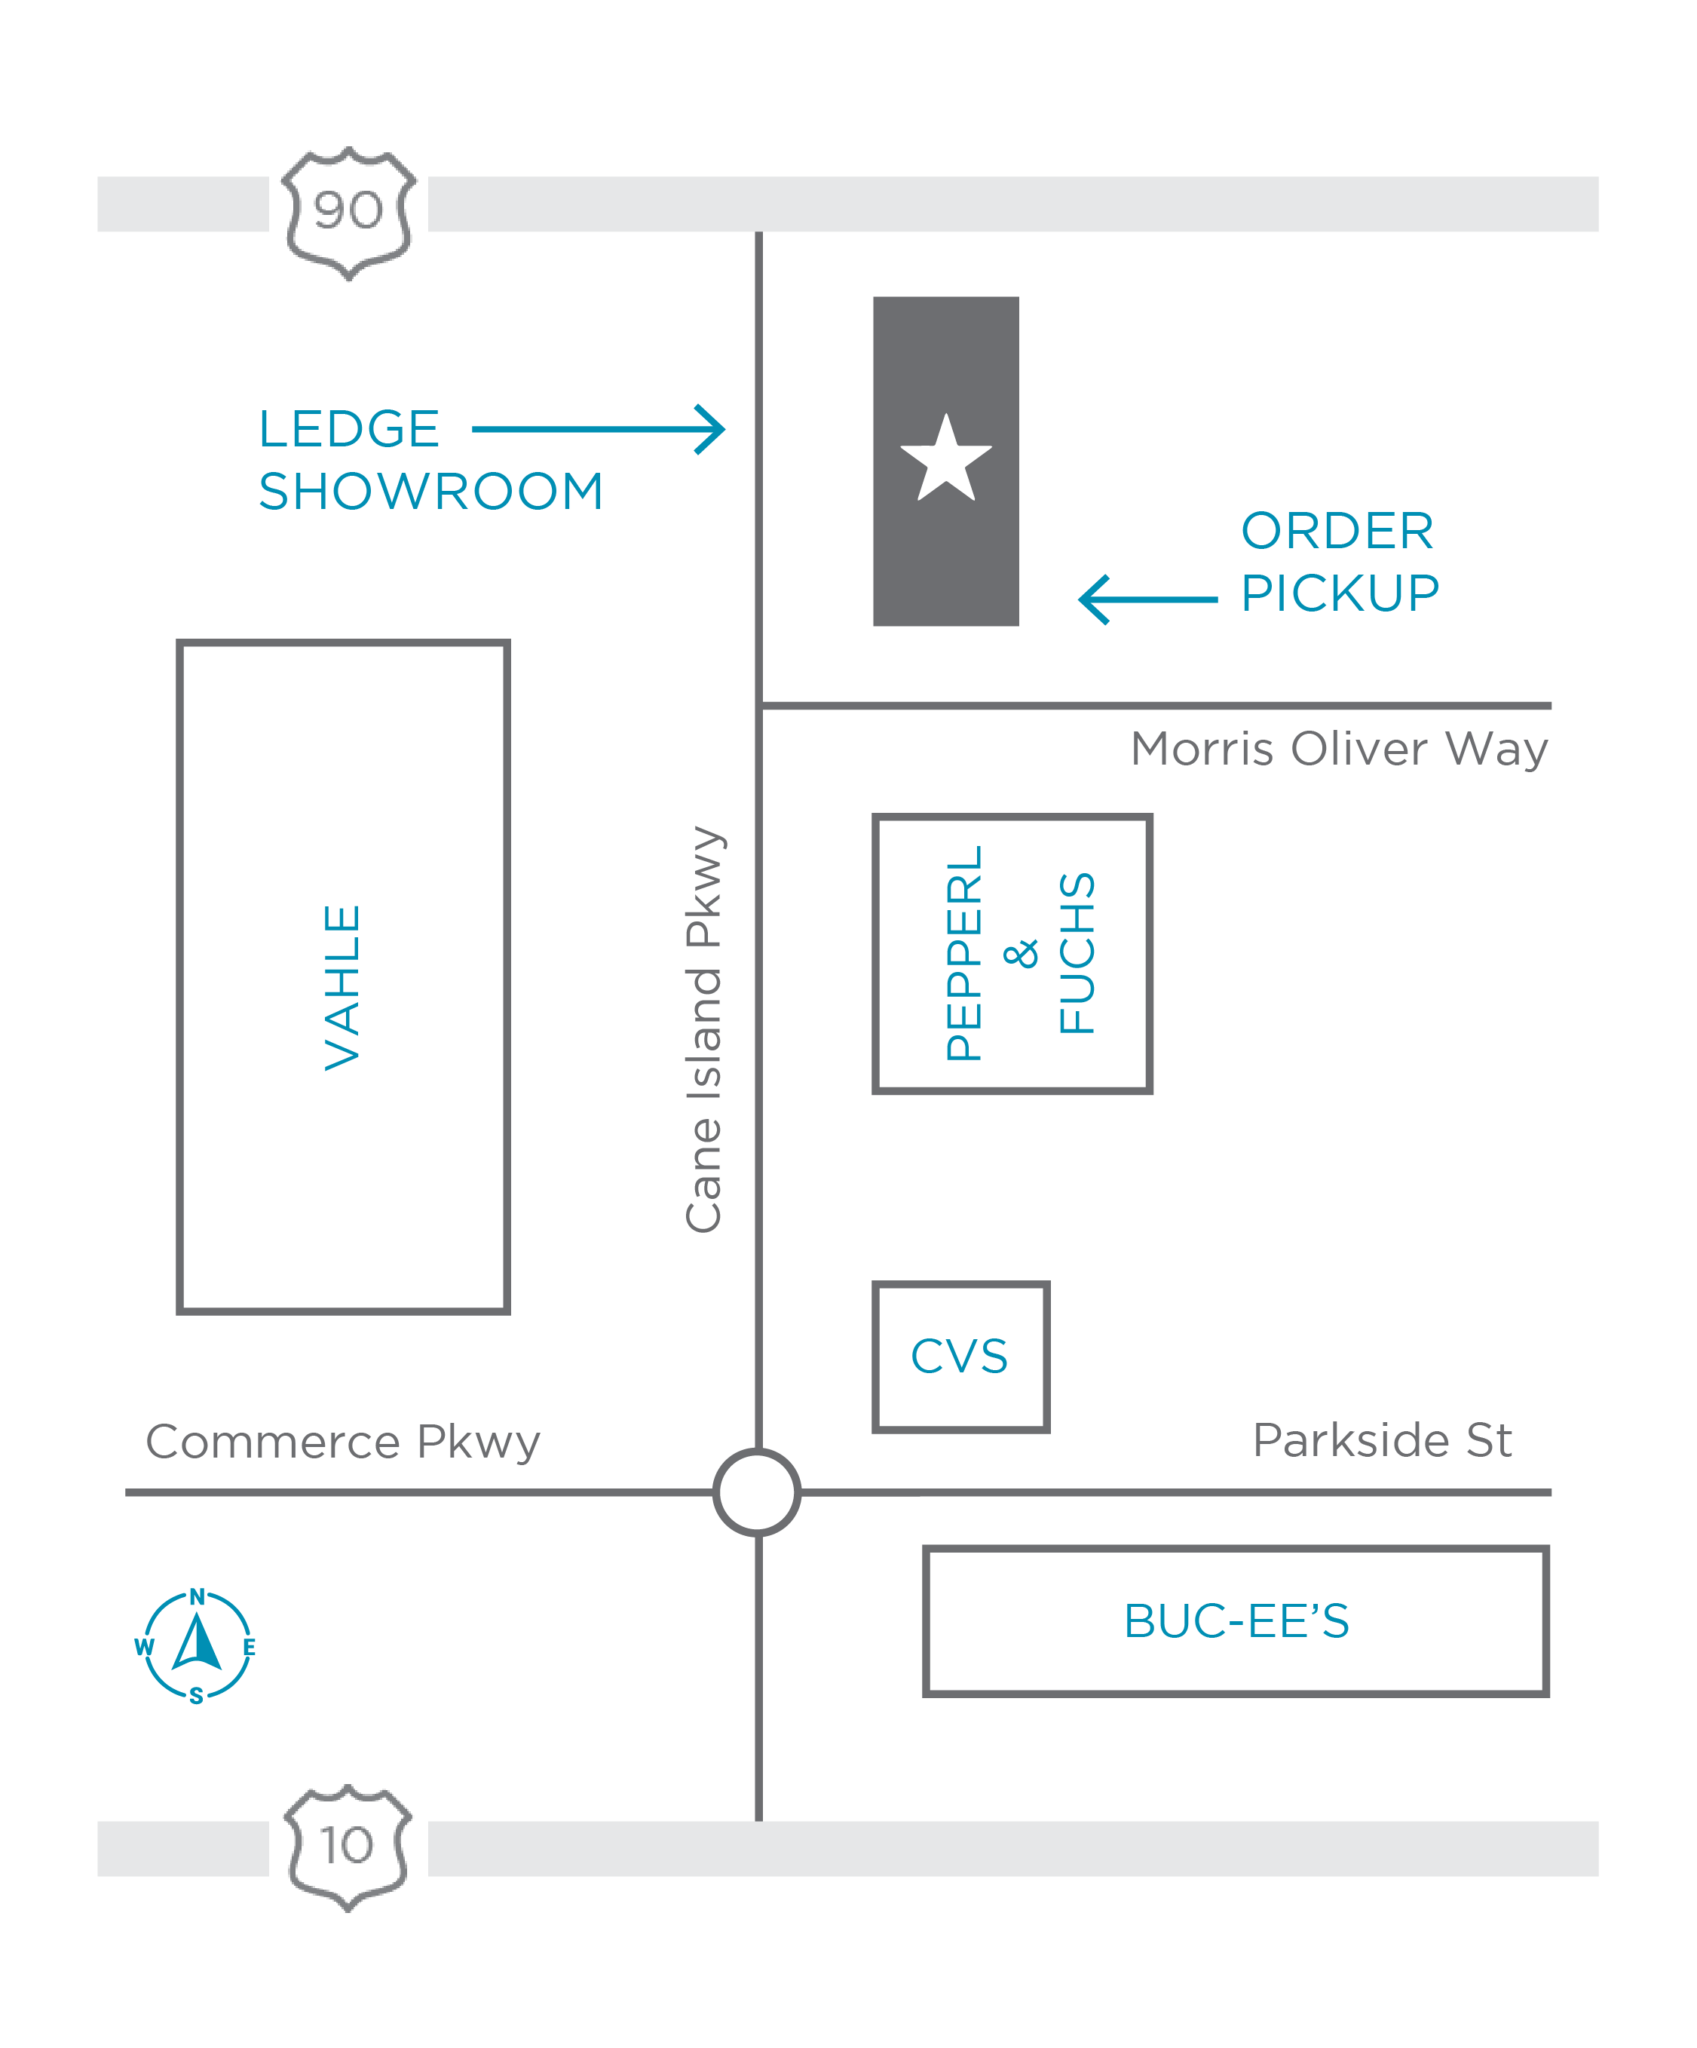 Ledge Showroom Map